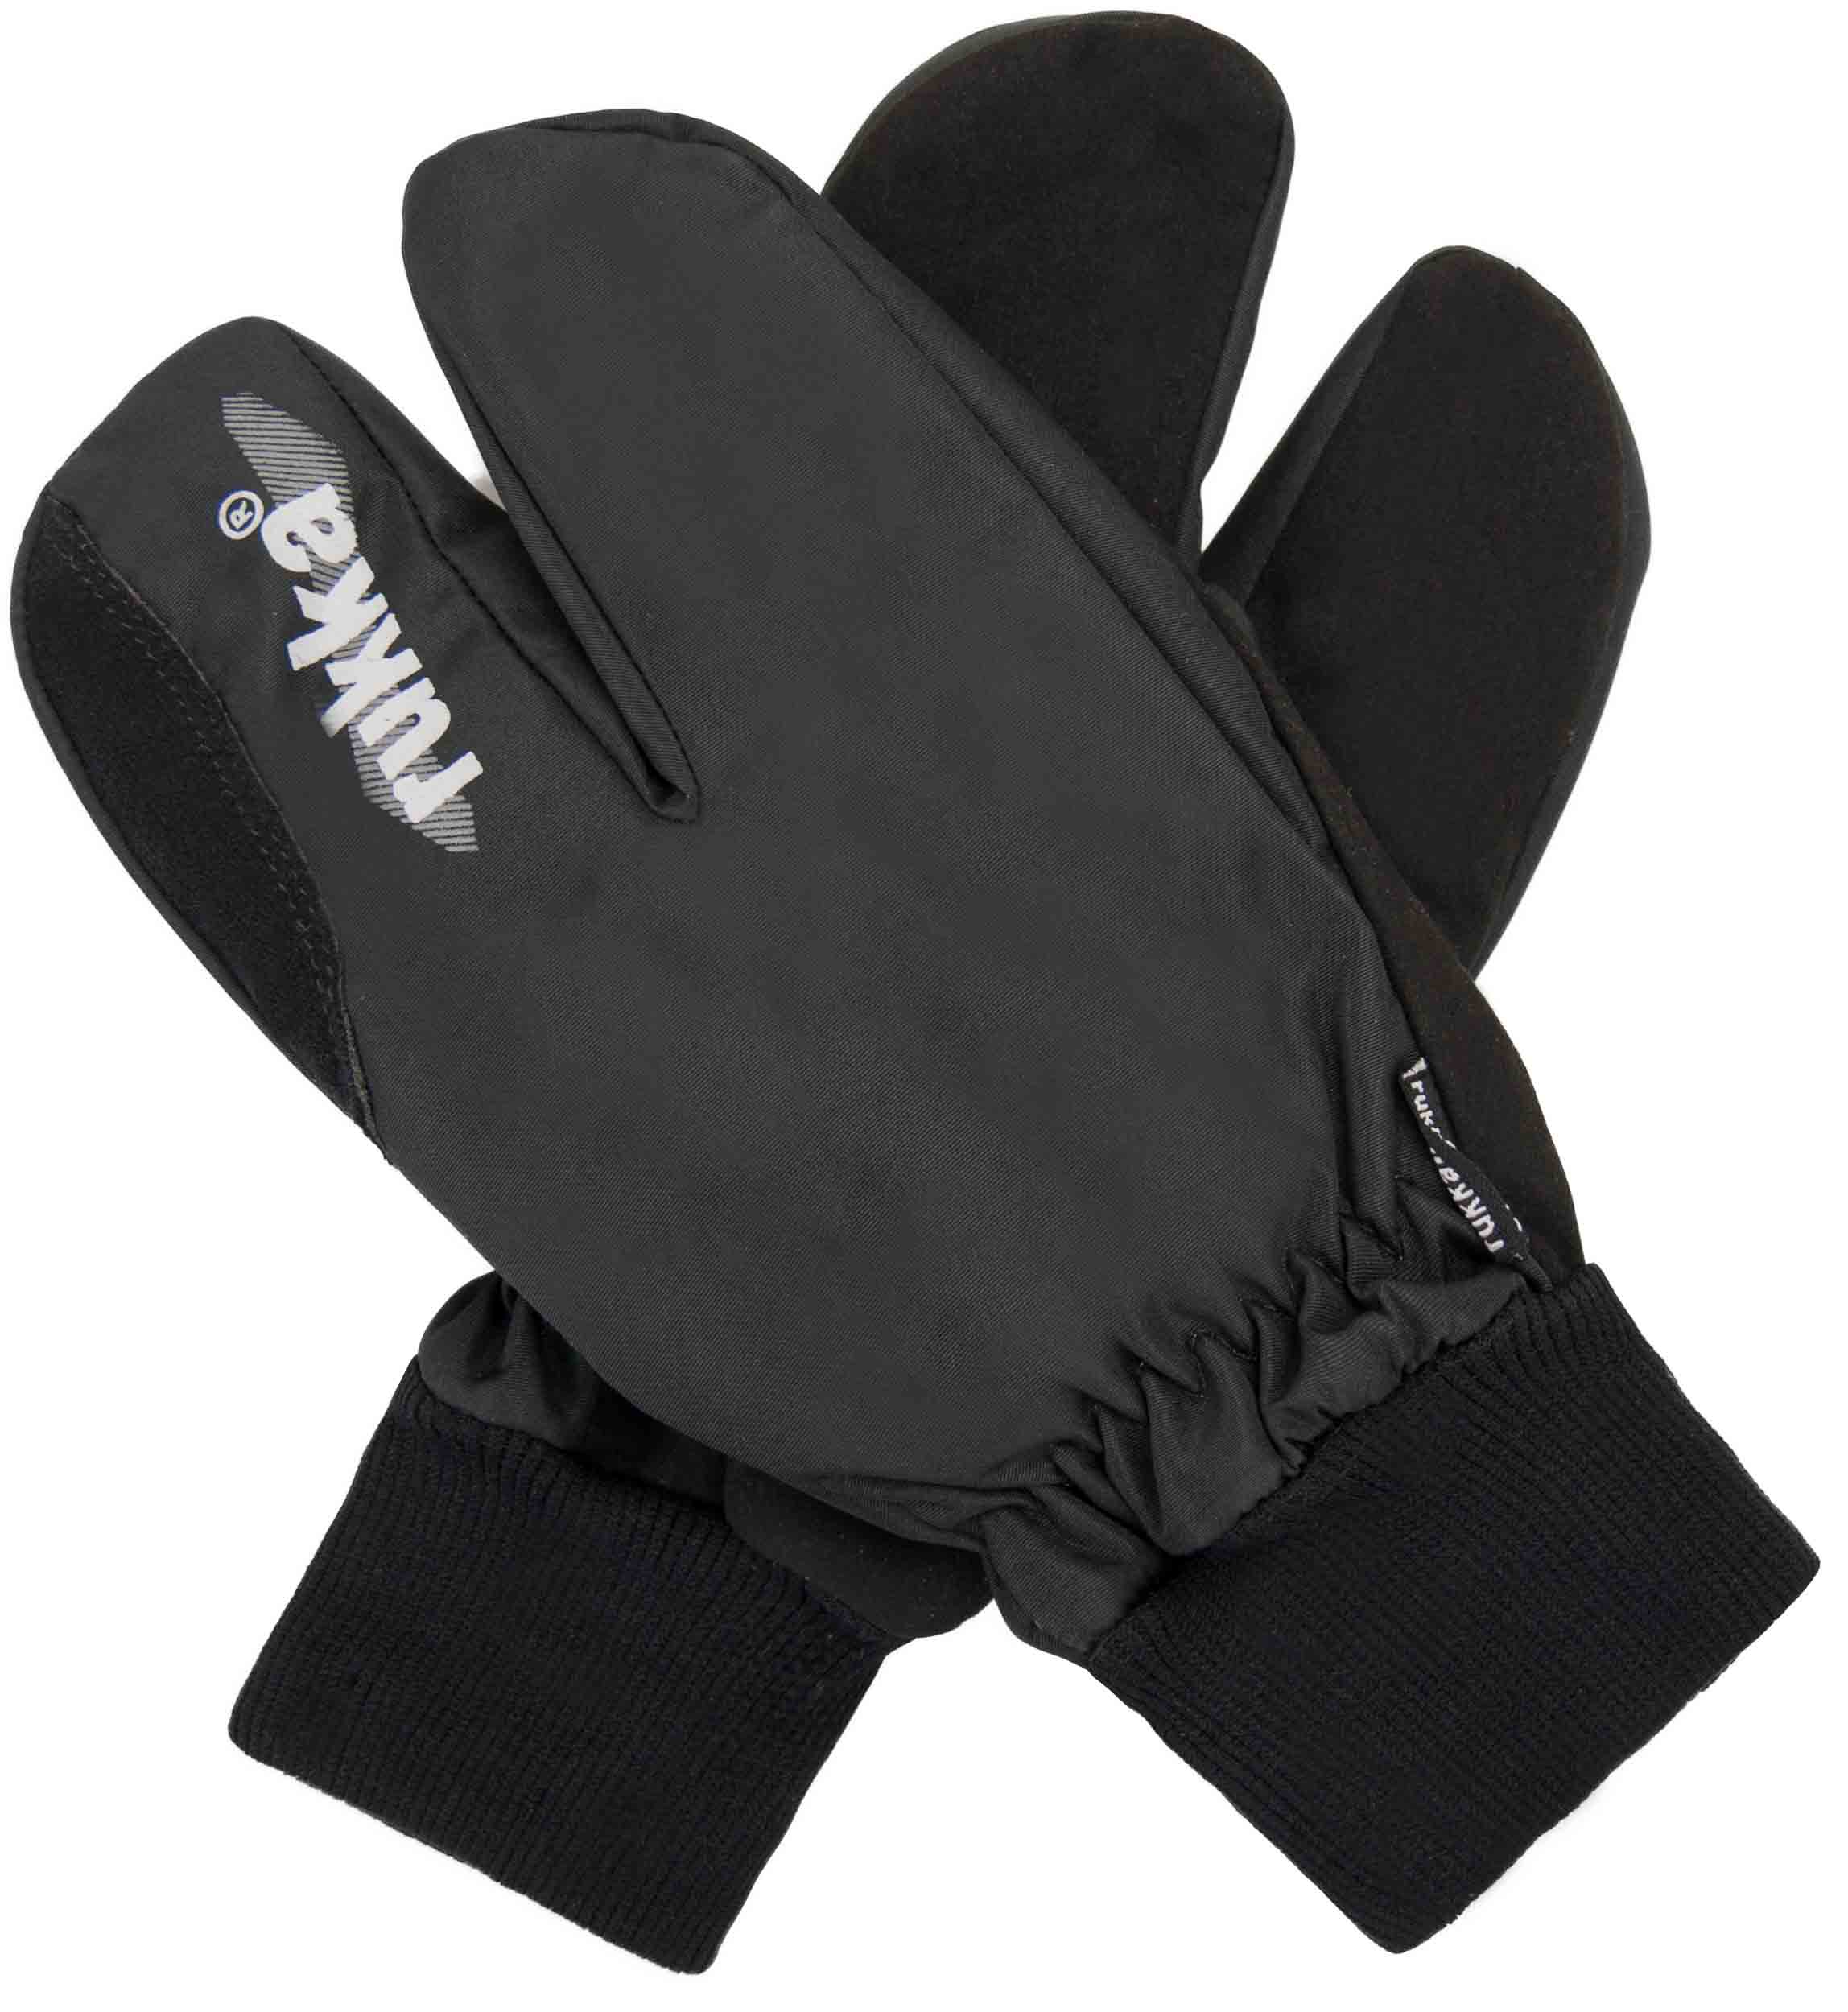 Rukavice Rukka Finger Split Gloves|11